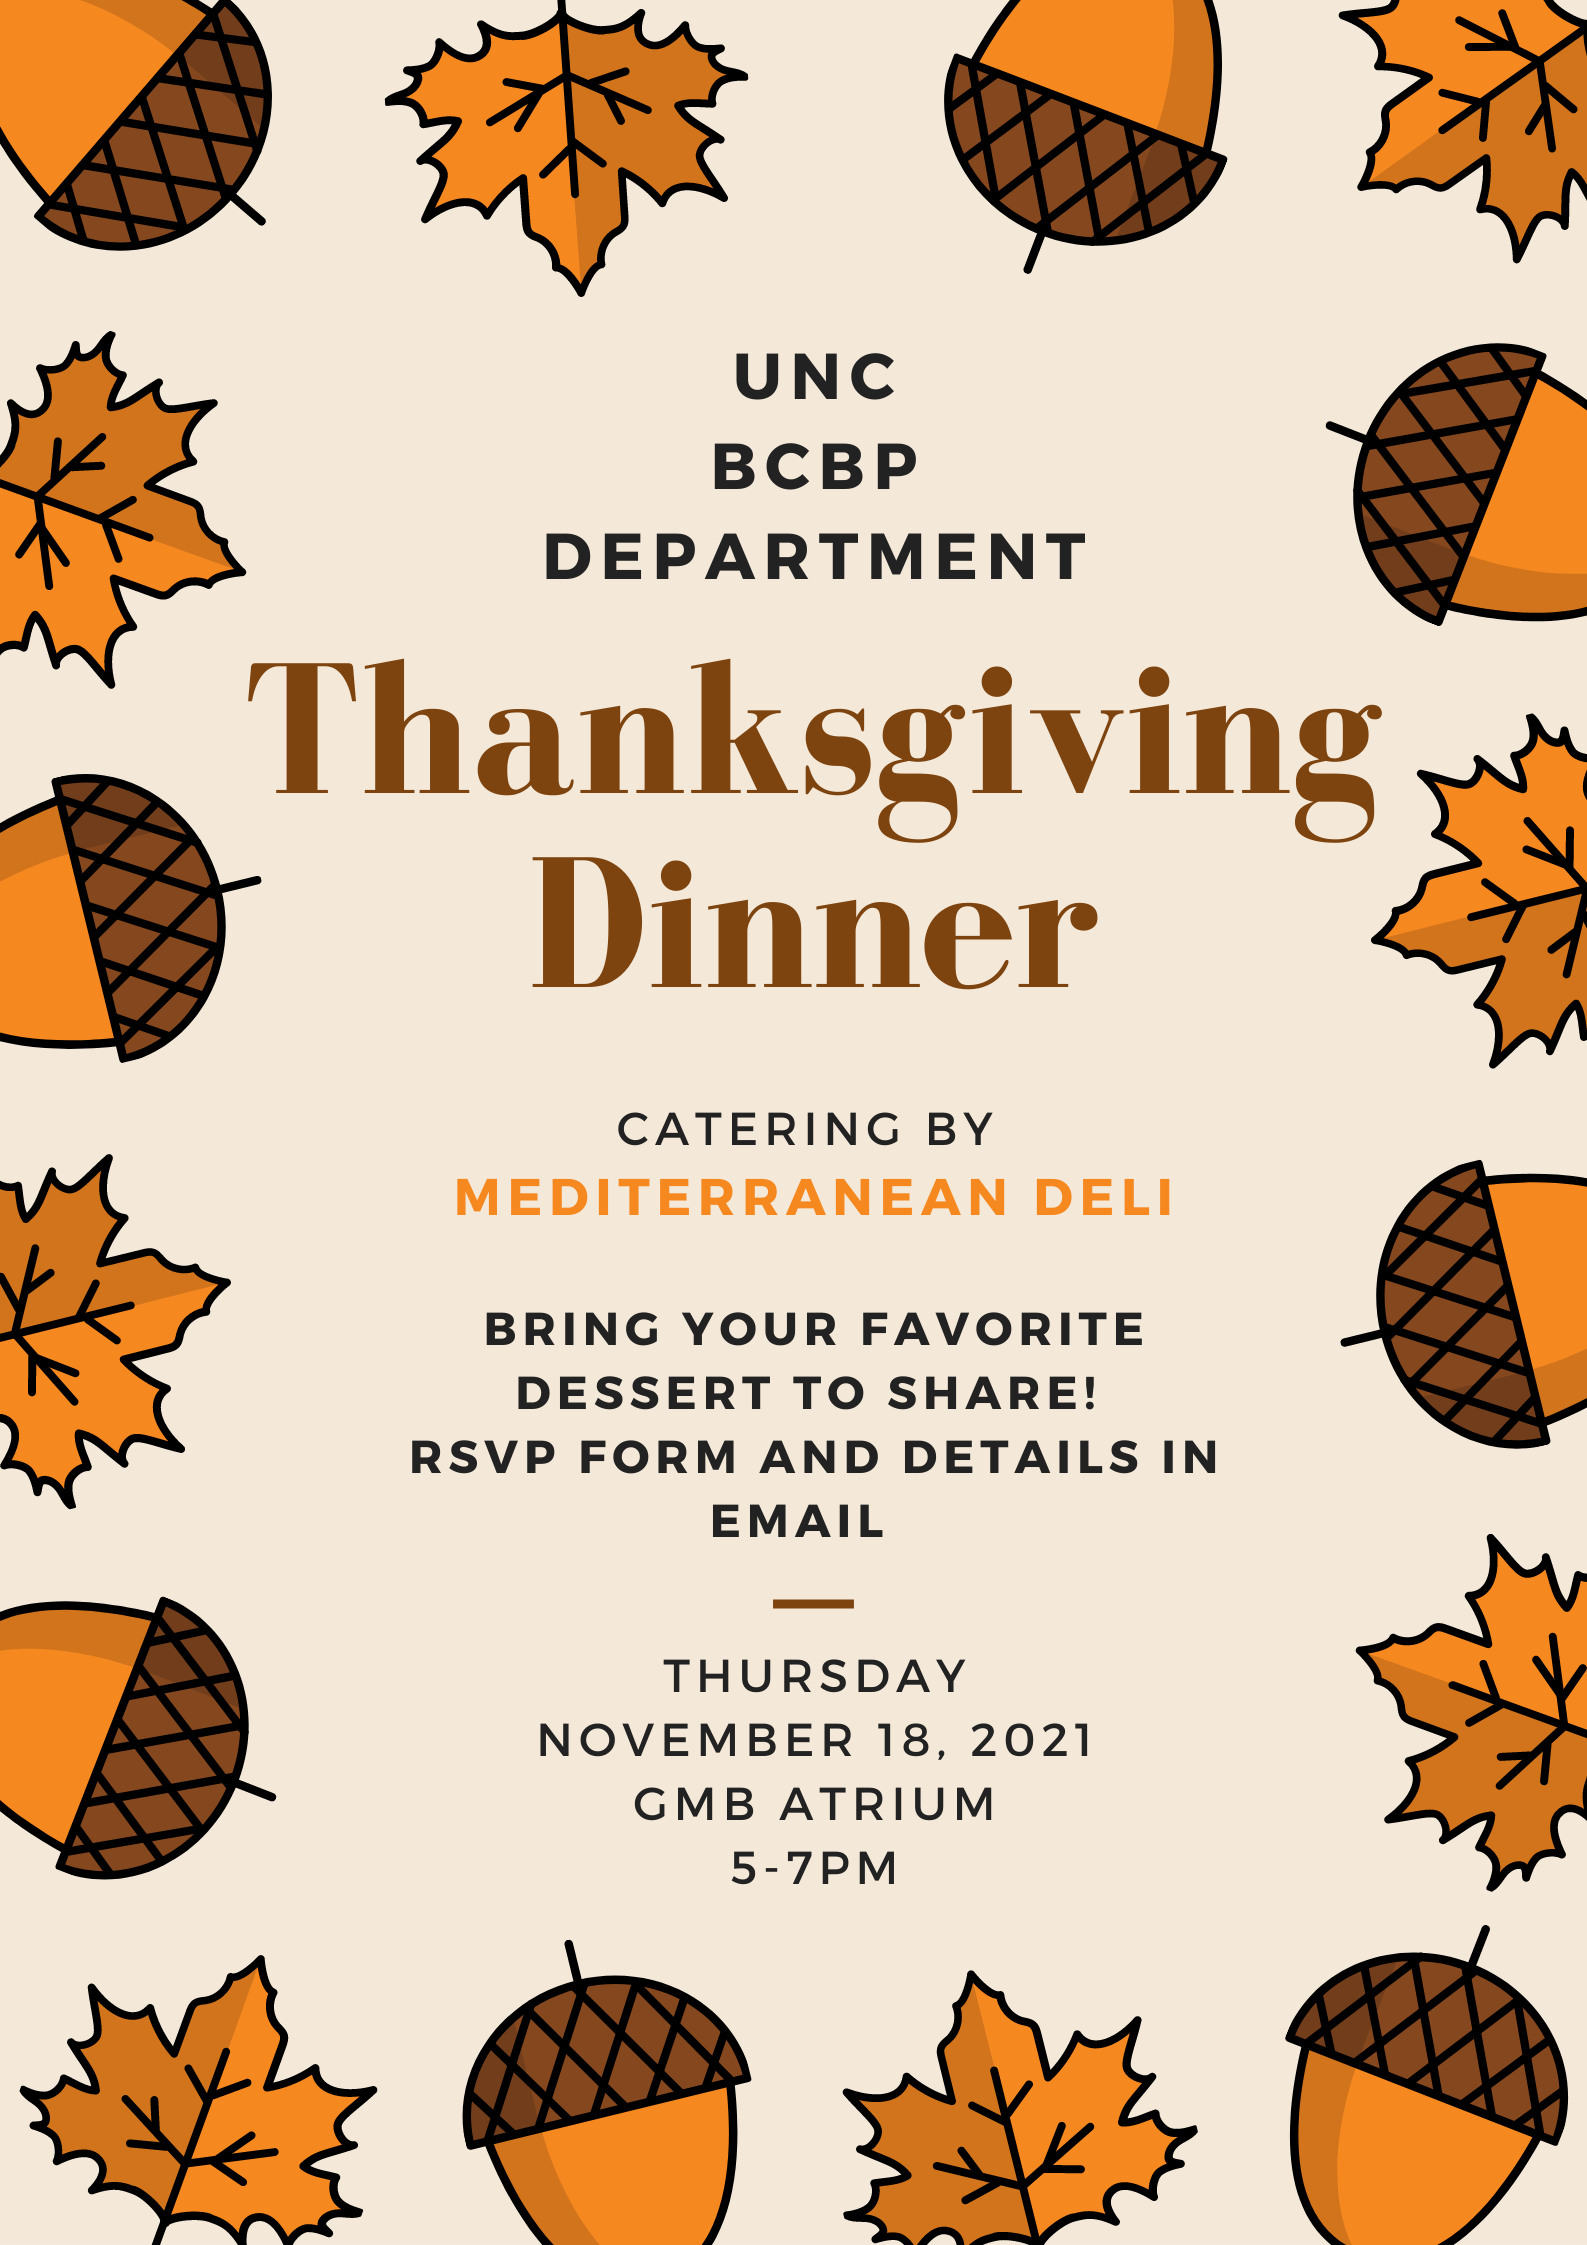 BCBP Thanksgiving dinner med deli November 18 5 to 7pm